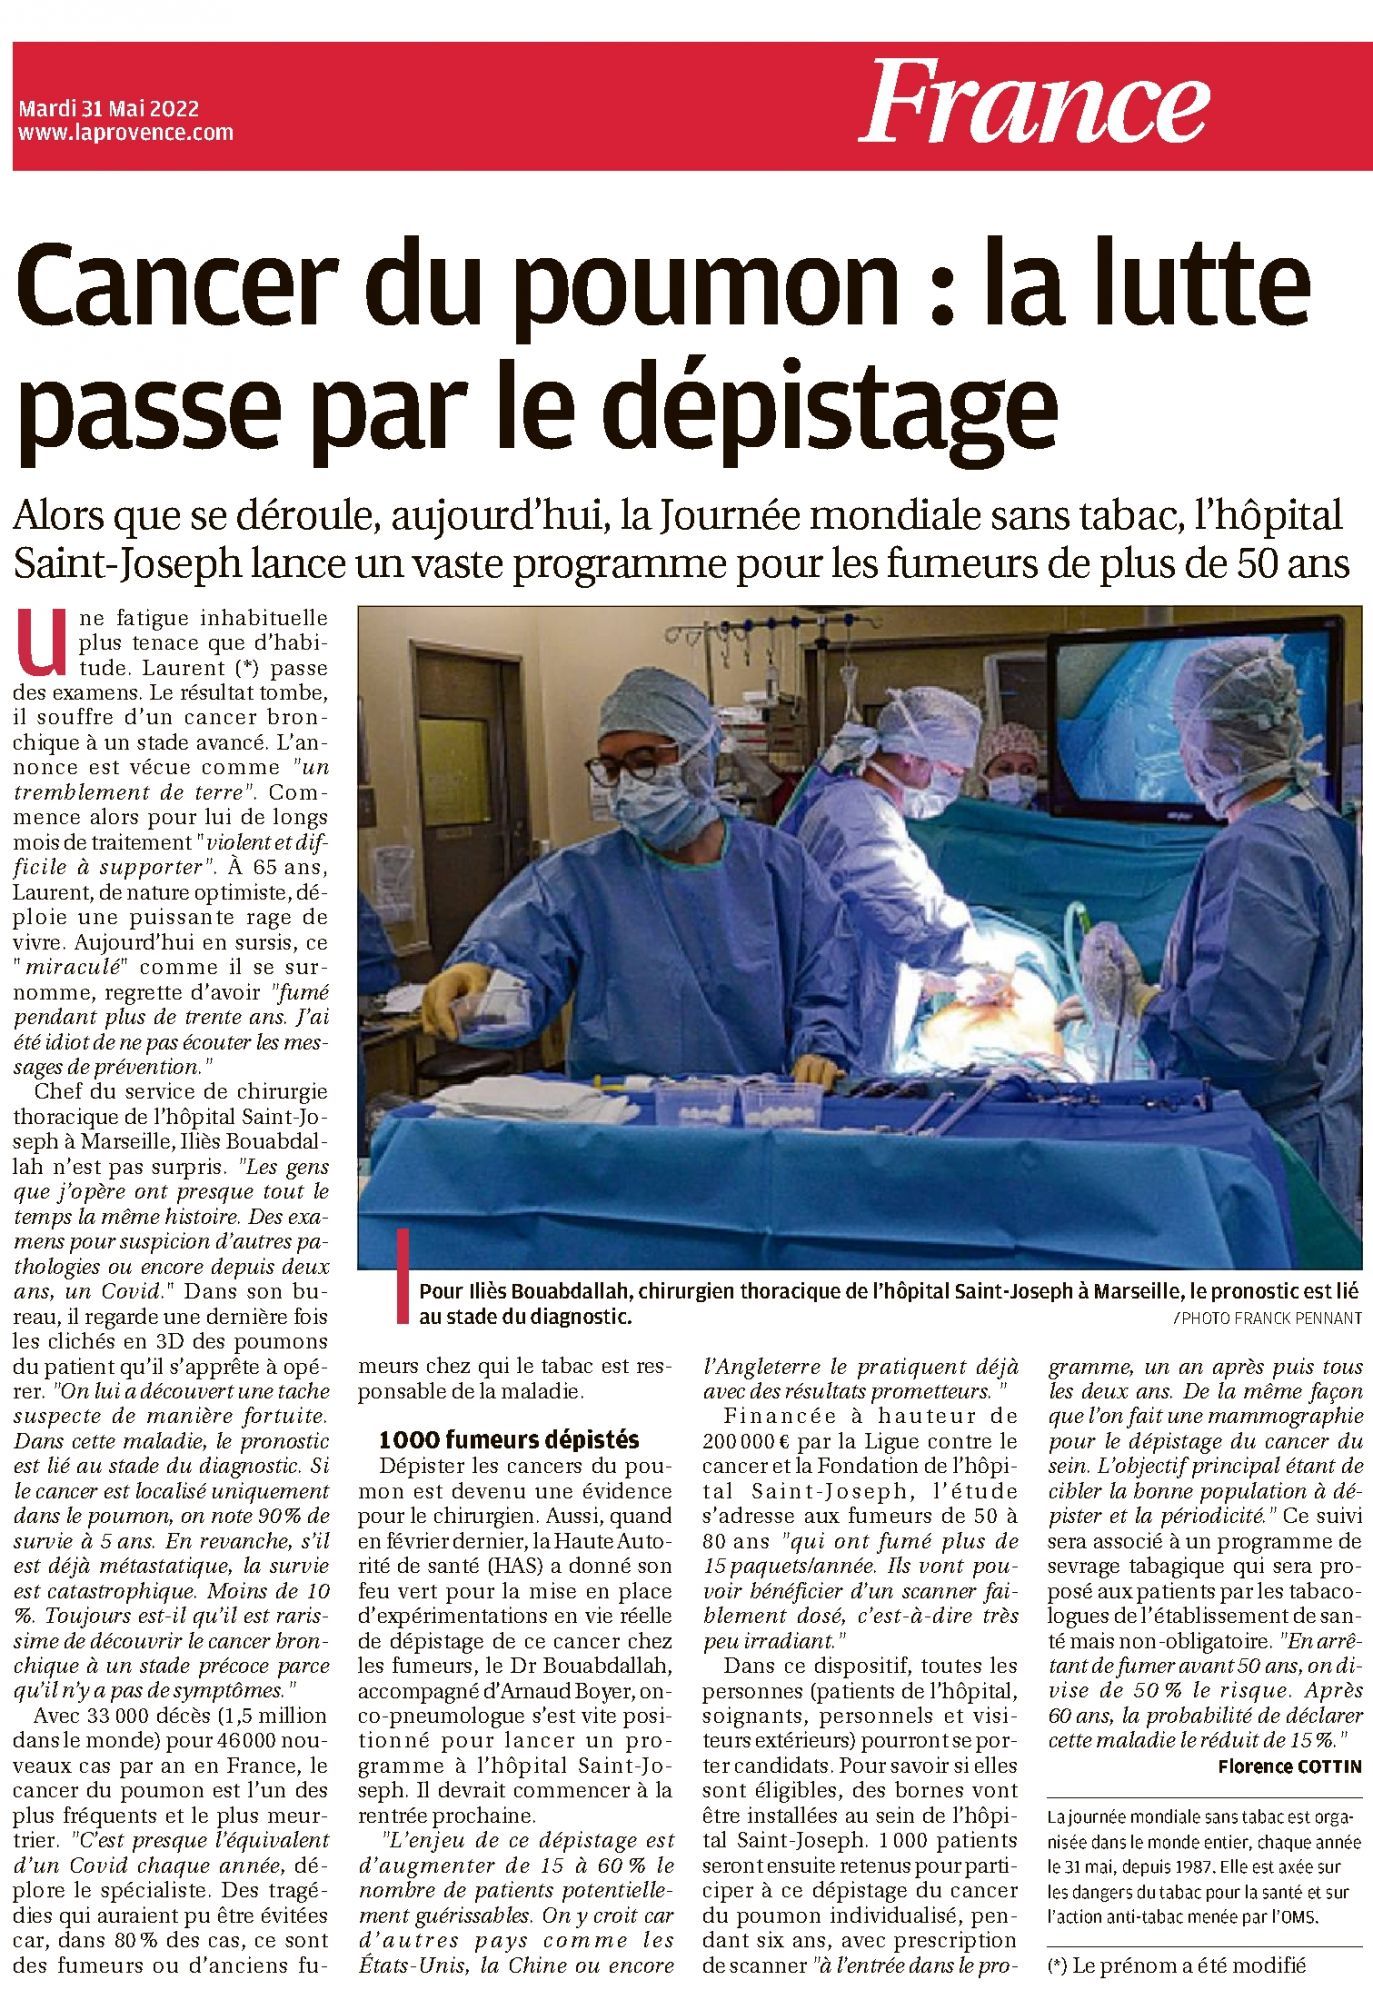 L'hôpital Saint-Joseph de Marseille lance un programme de